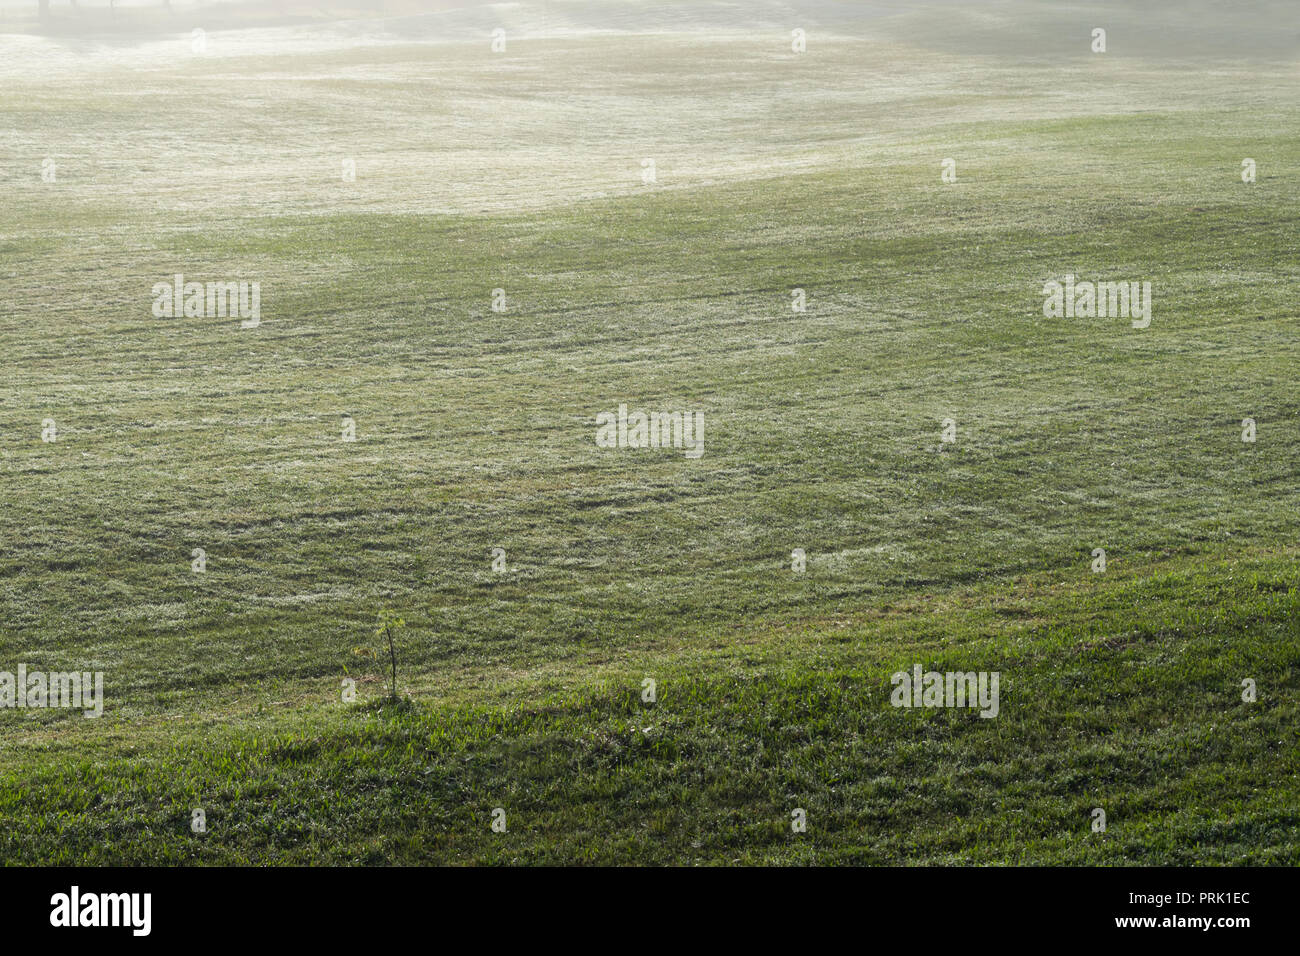 Hintergrund mit grüner Wiese und gelbe Sonnenlicht, Nebel Abdeckung Gras Hügel. Fotos im Golf Course Design Ideen, Travel, Werbung Stockfoto